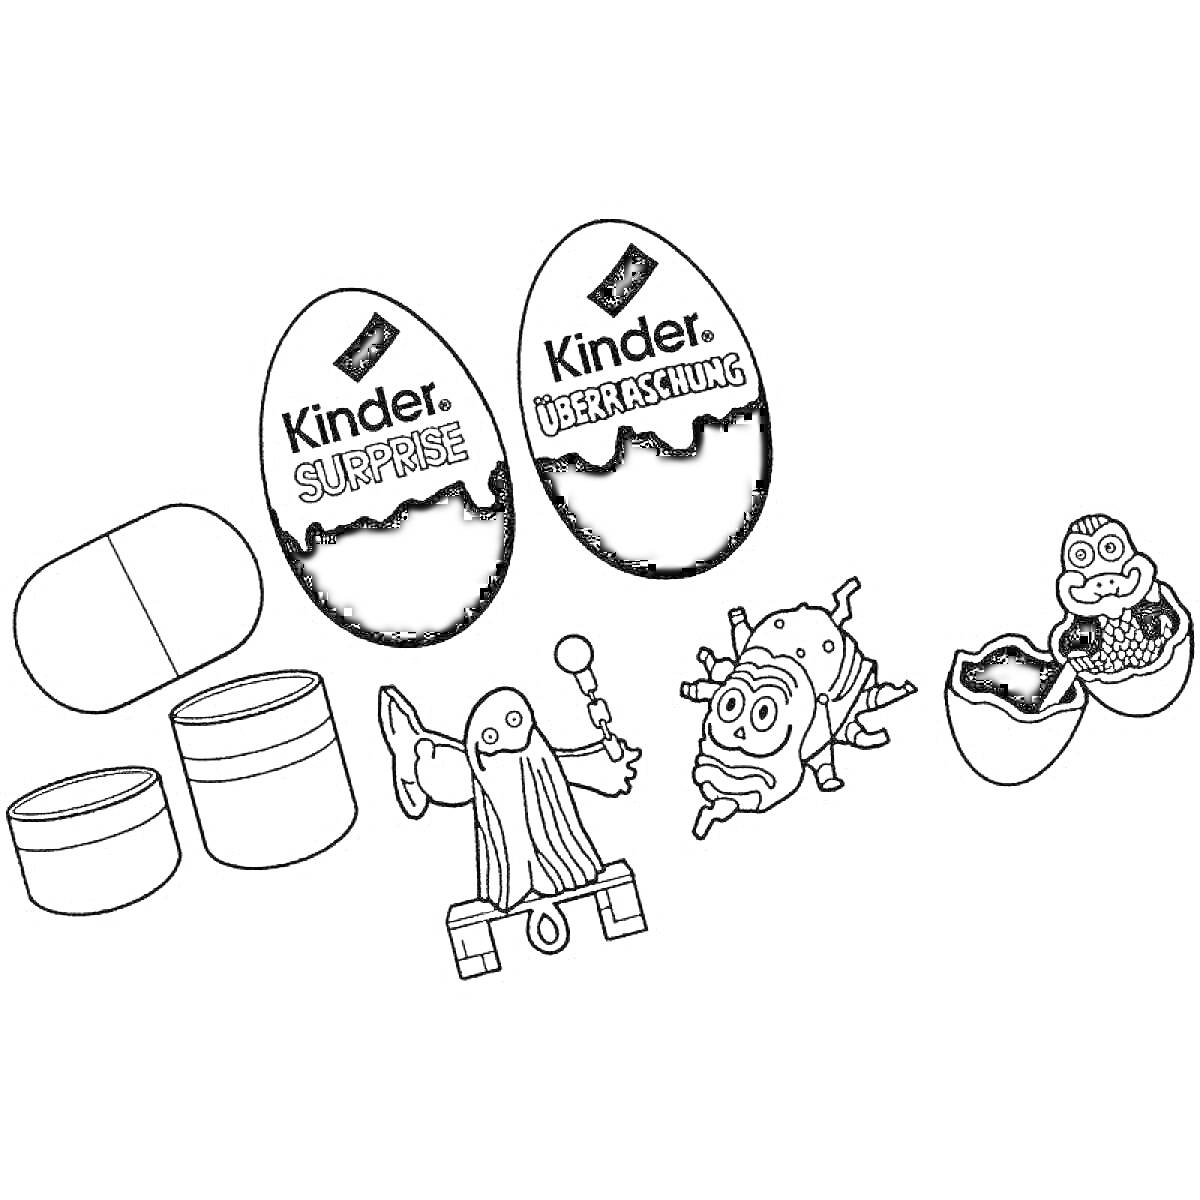 Раскраска Два яйца Kinder Surprise, пустые контейнеры, игрушки внутри яйца - робот и жук, открытое шоколадное яйцо с динозавром в яйце.